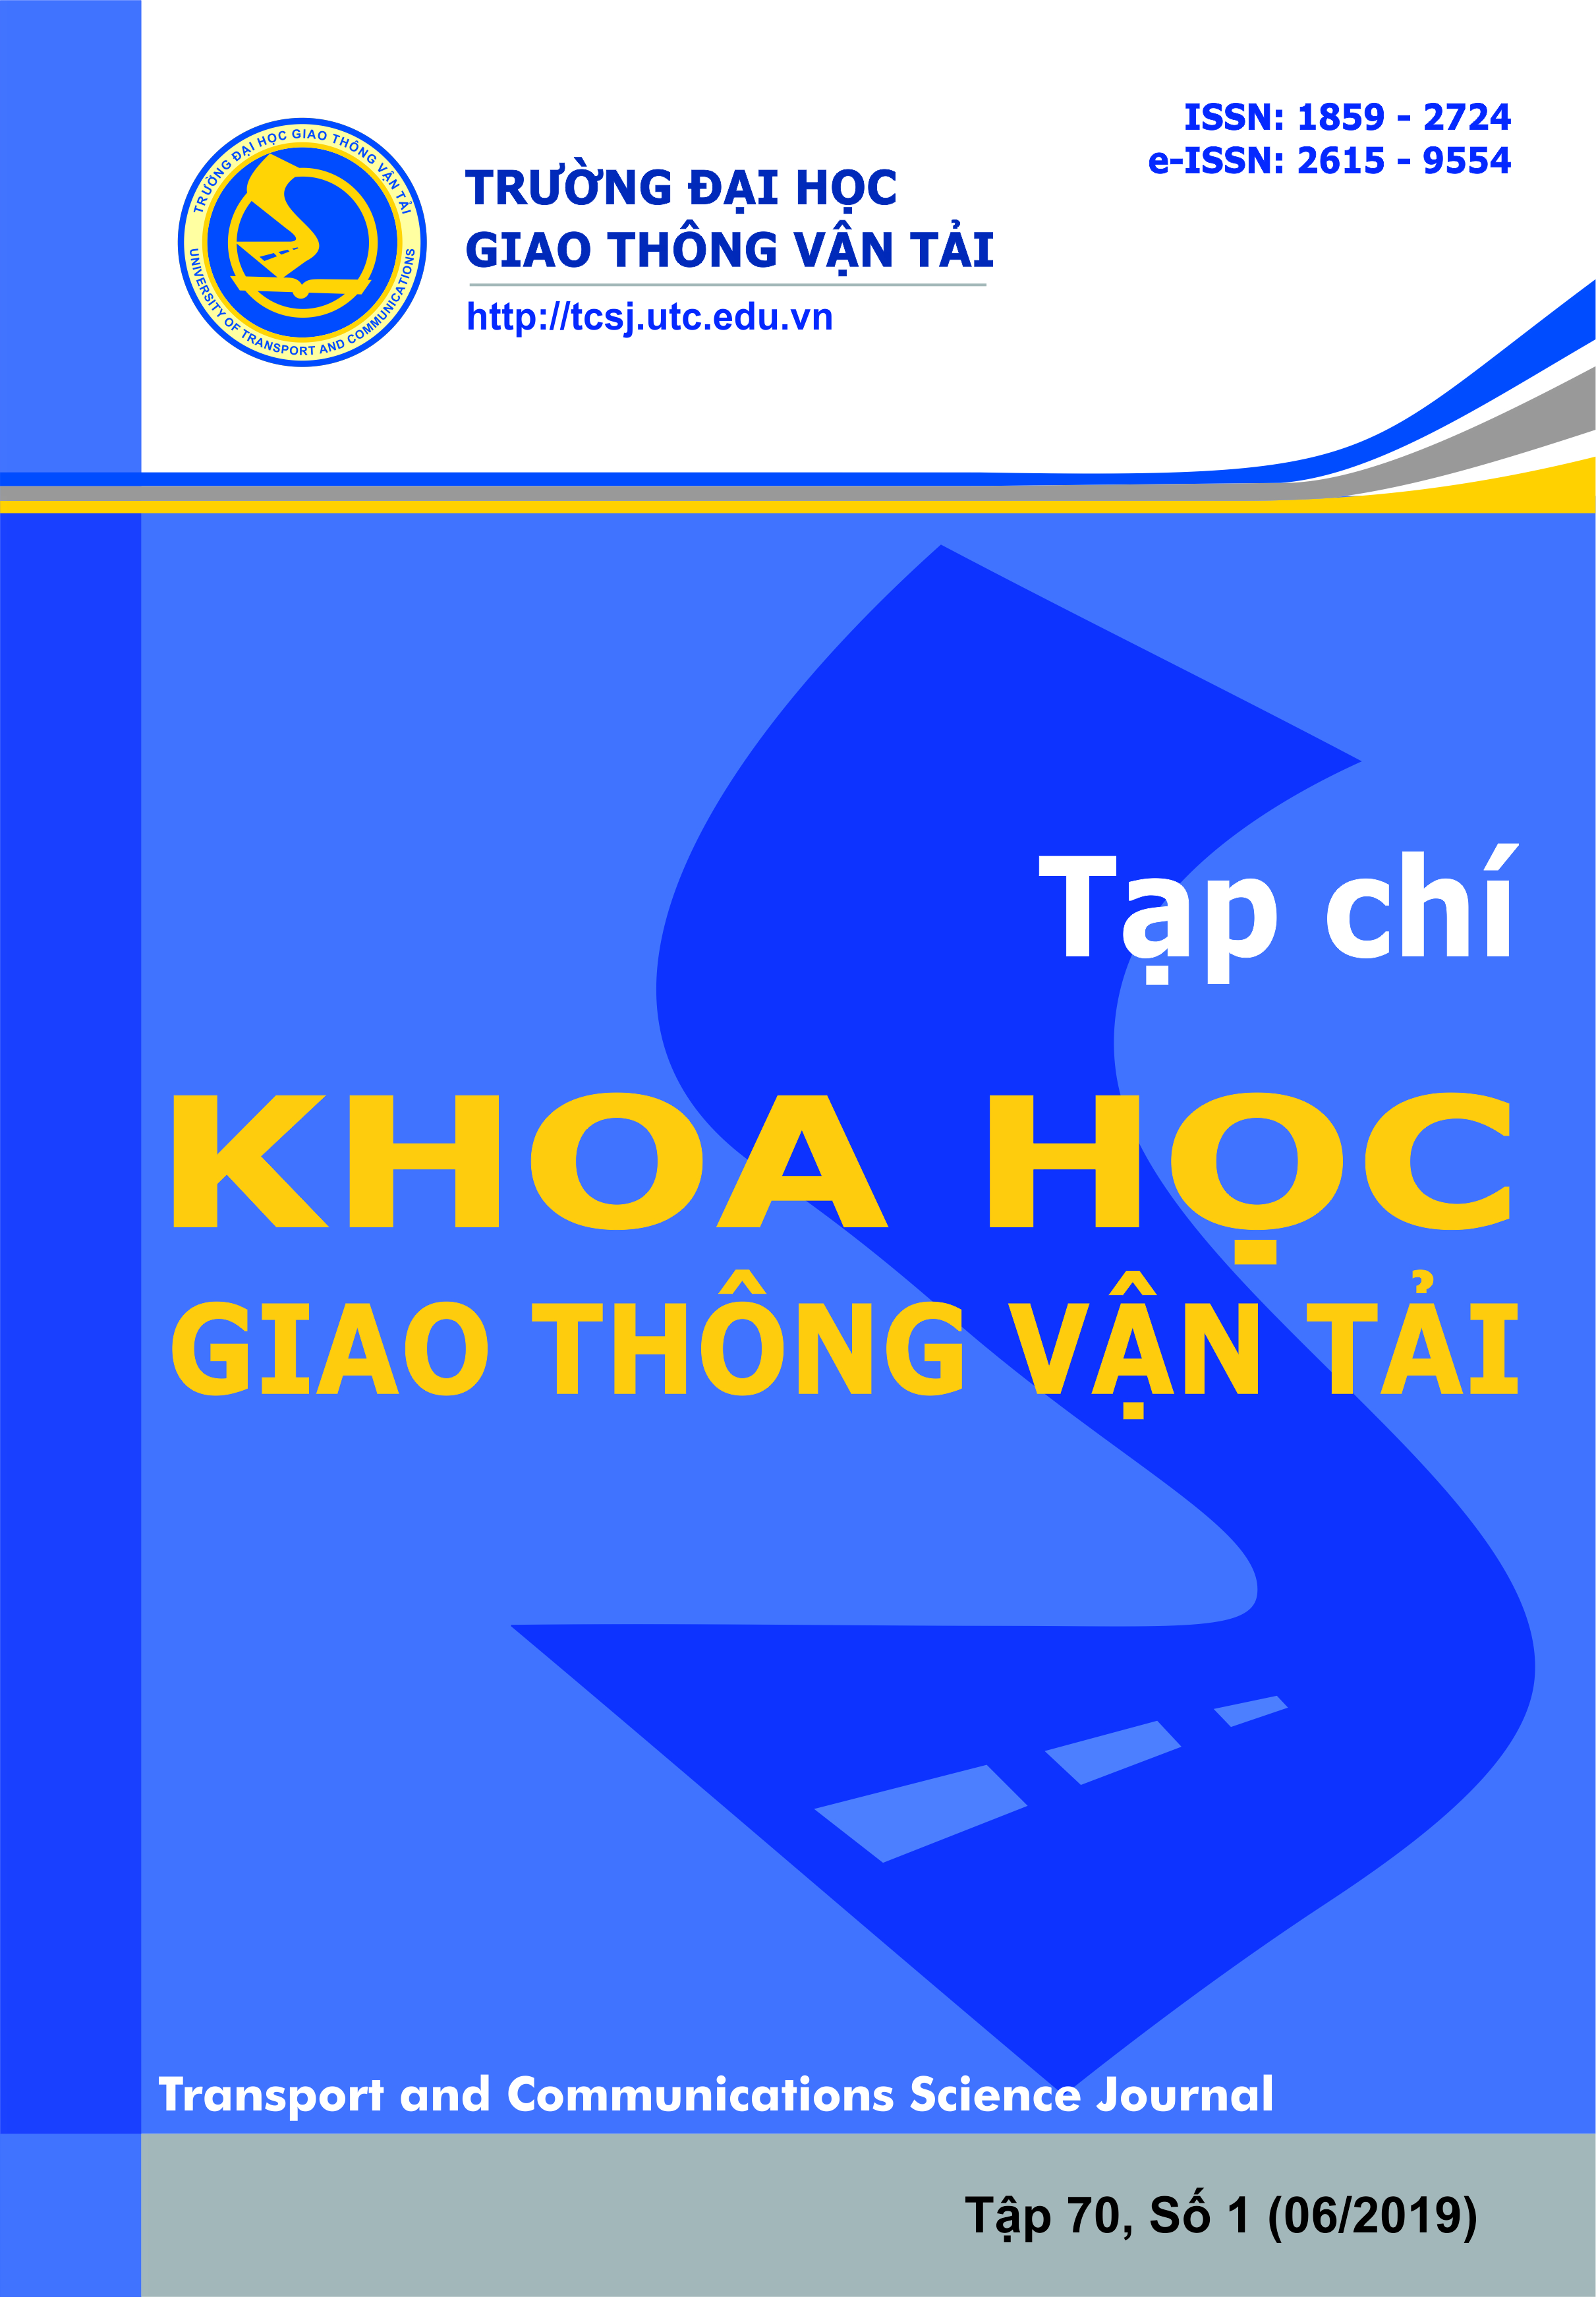 Phân tích cấu kiện bê tông cốt thép chịu nén uốn phức tạp ở trạng thái giới hạn sử dụng 
theo tiêu chuẩn Việt Nam TCVN 11823-2017 
